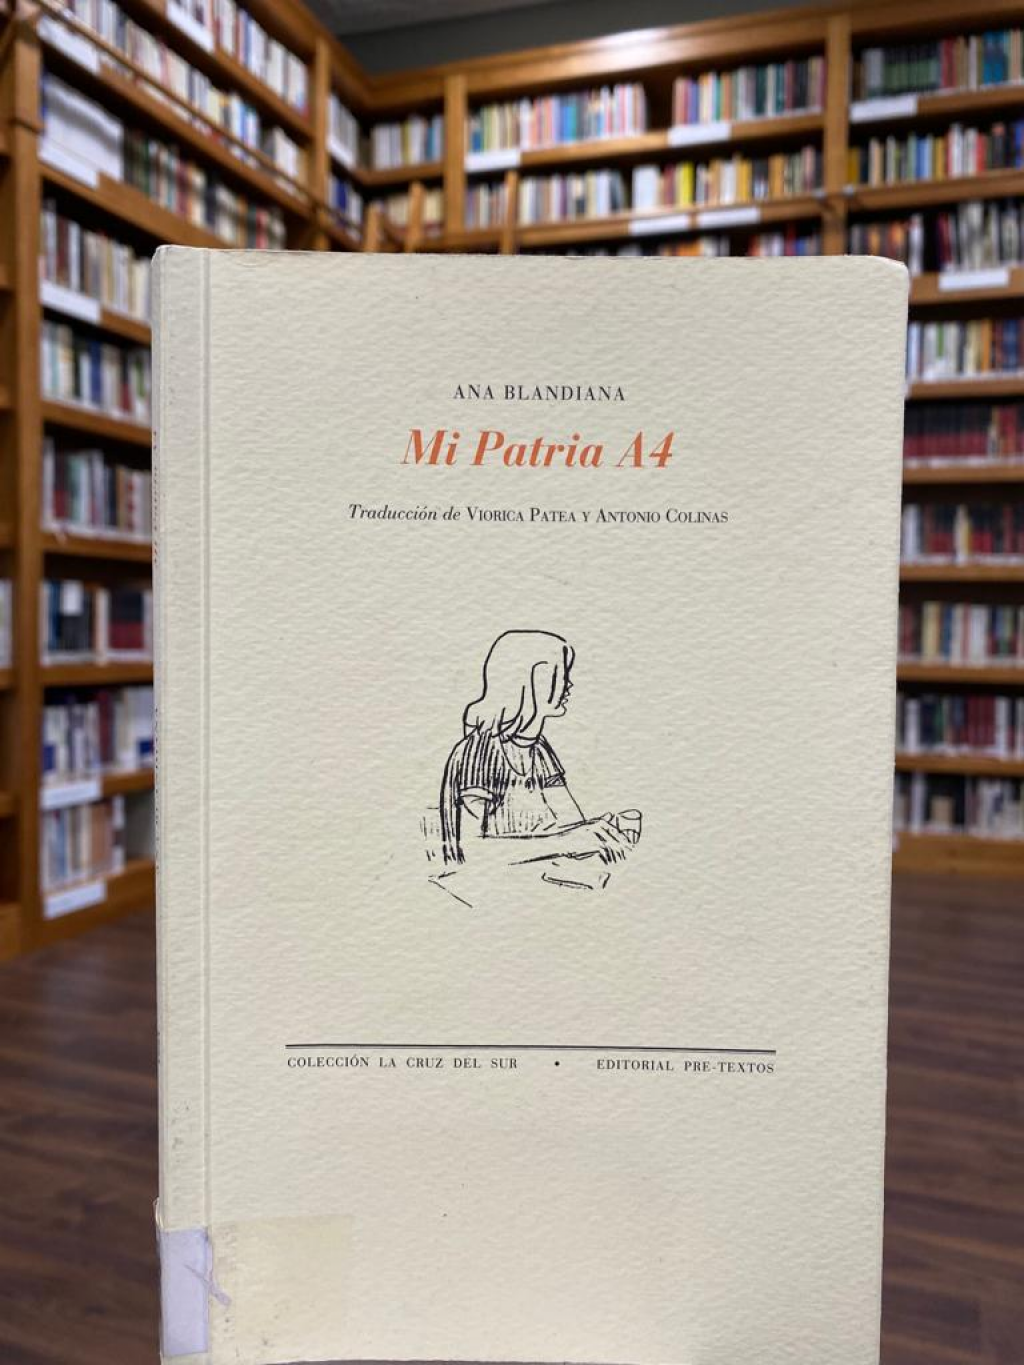 Biblioteca ICR Madrid vă recomandă: „Patria mea A4” de Ana Blandiana  (ediție bilingvă)